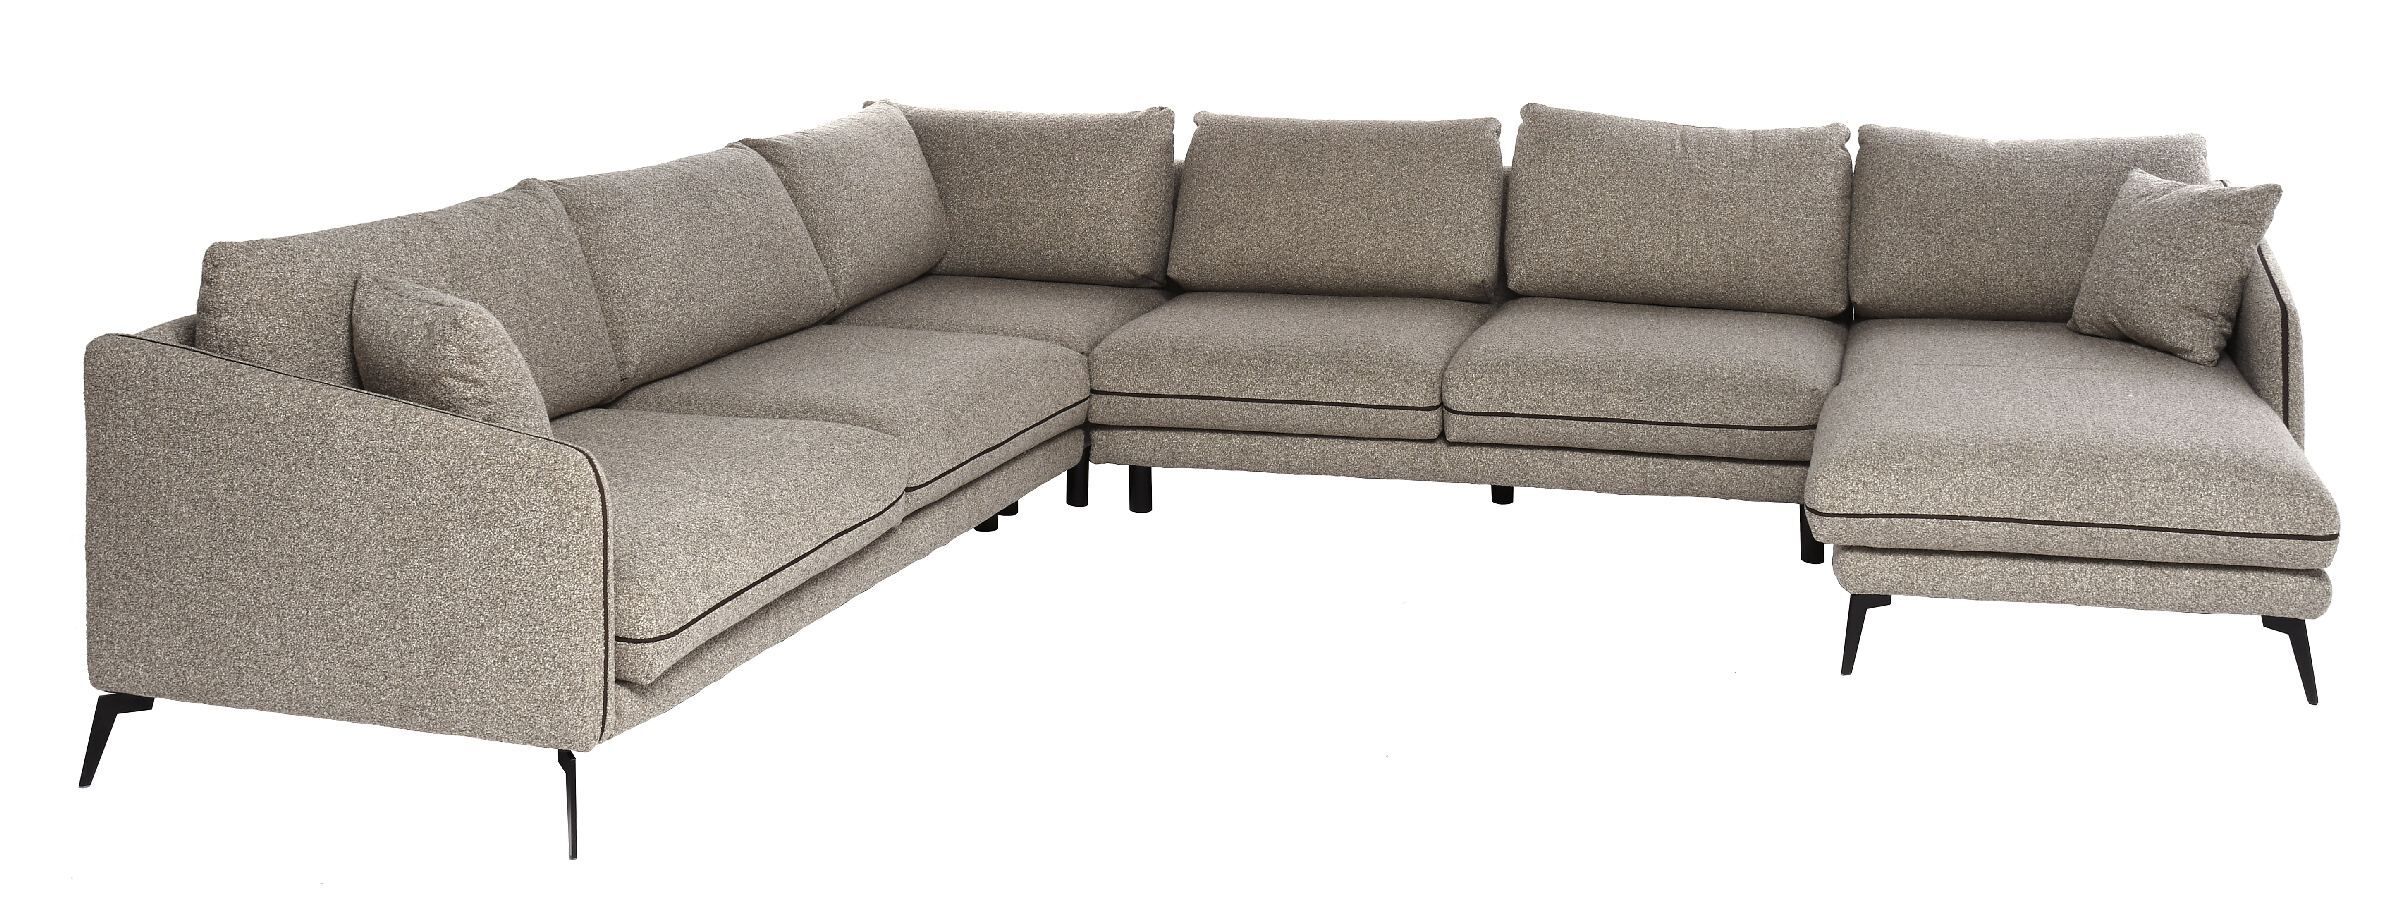 Sofa narożna Entity 336x160/284x86cm